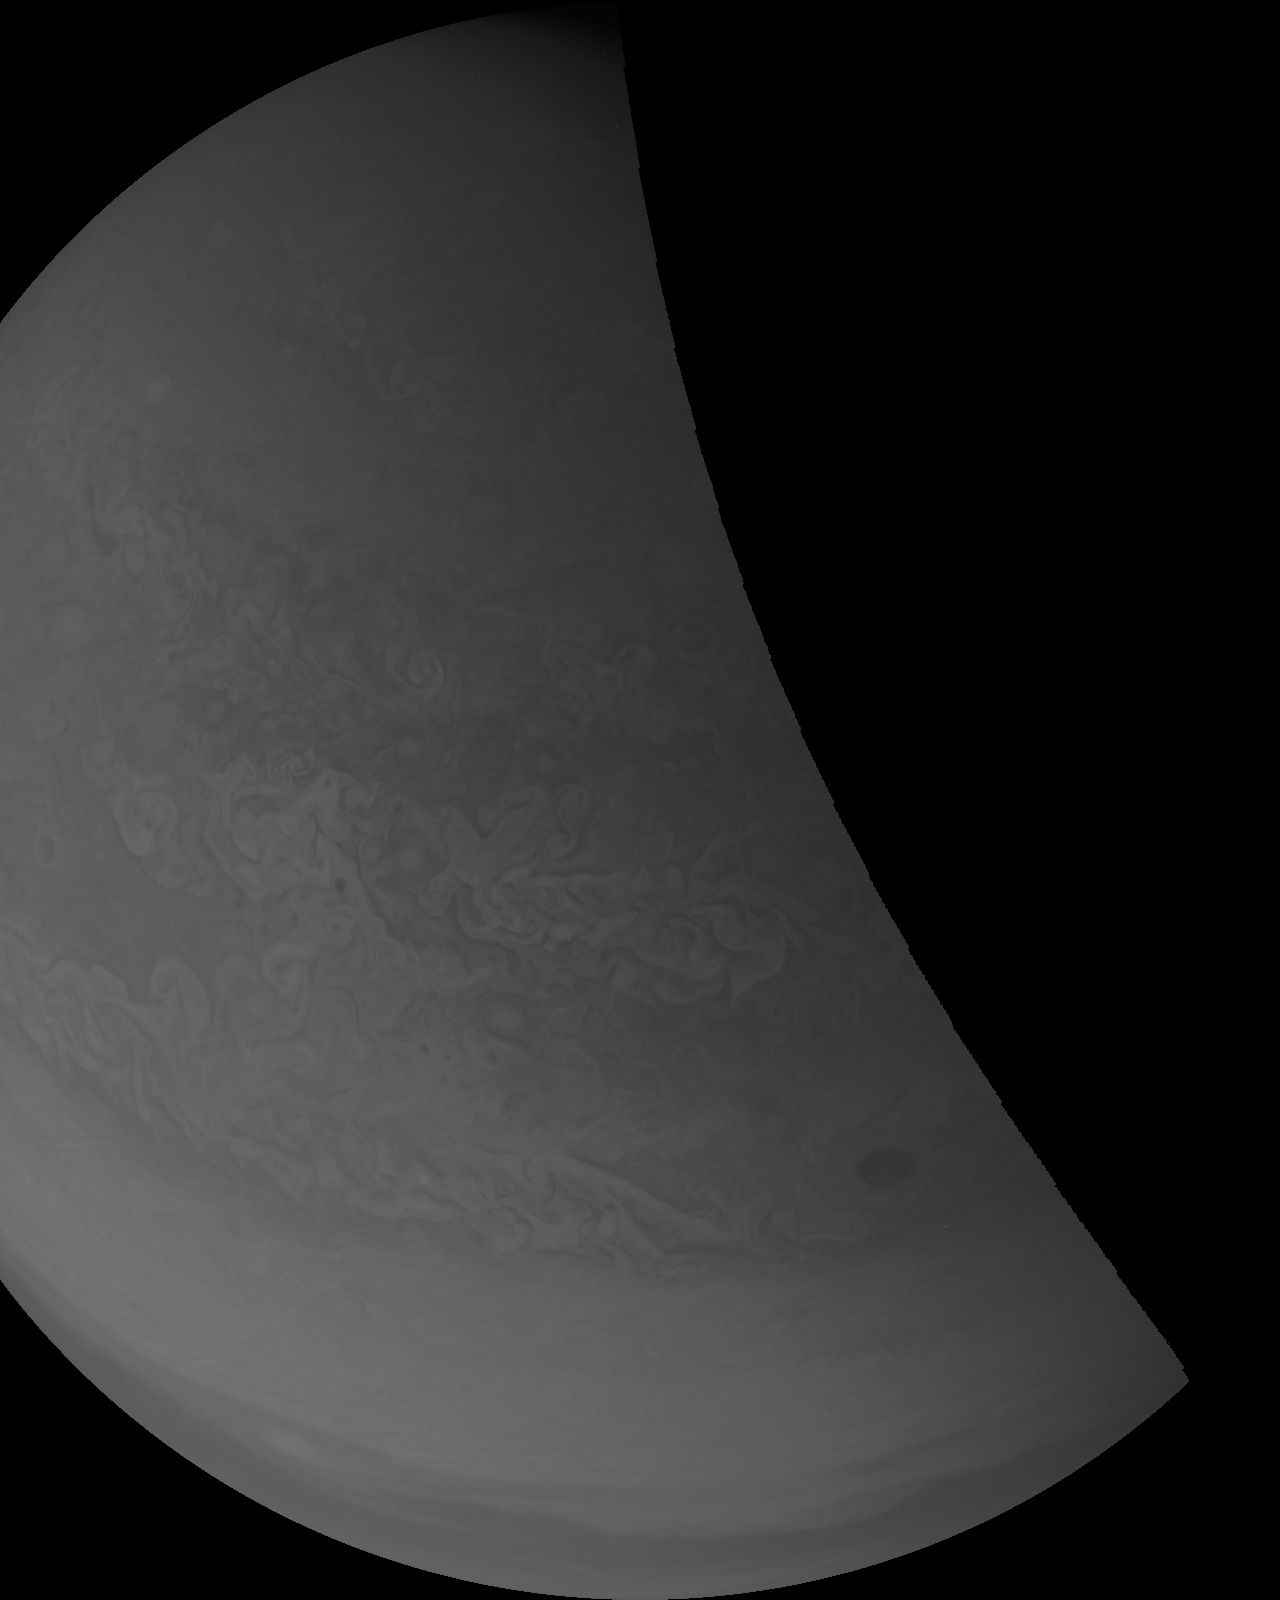 Les données brutes renvoyées ont révélé beaucoup de choses sur Jupiter